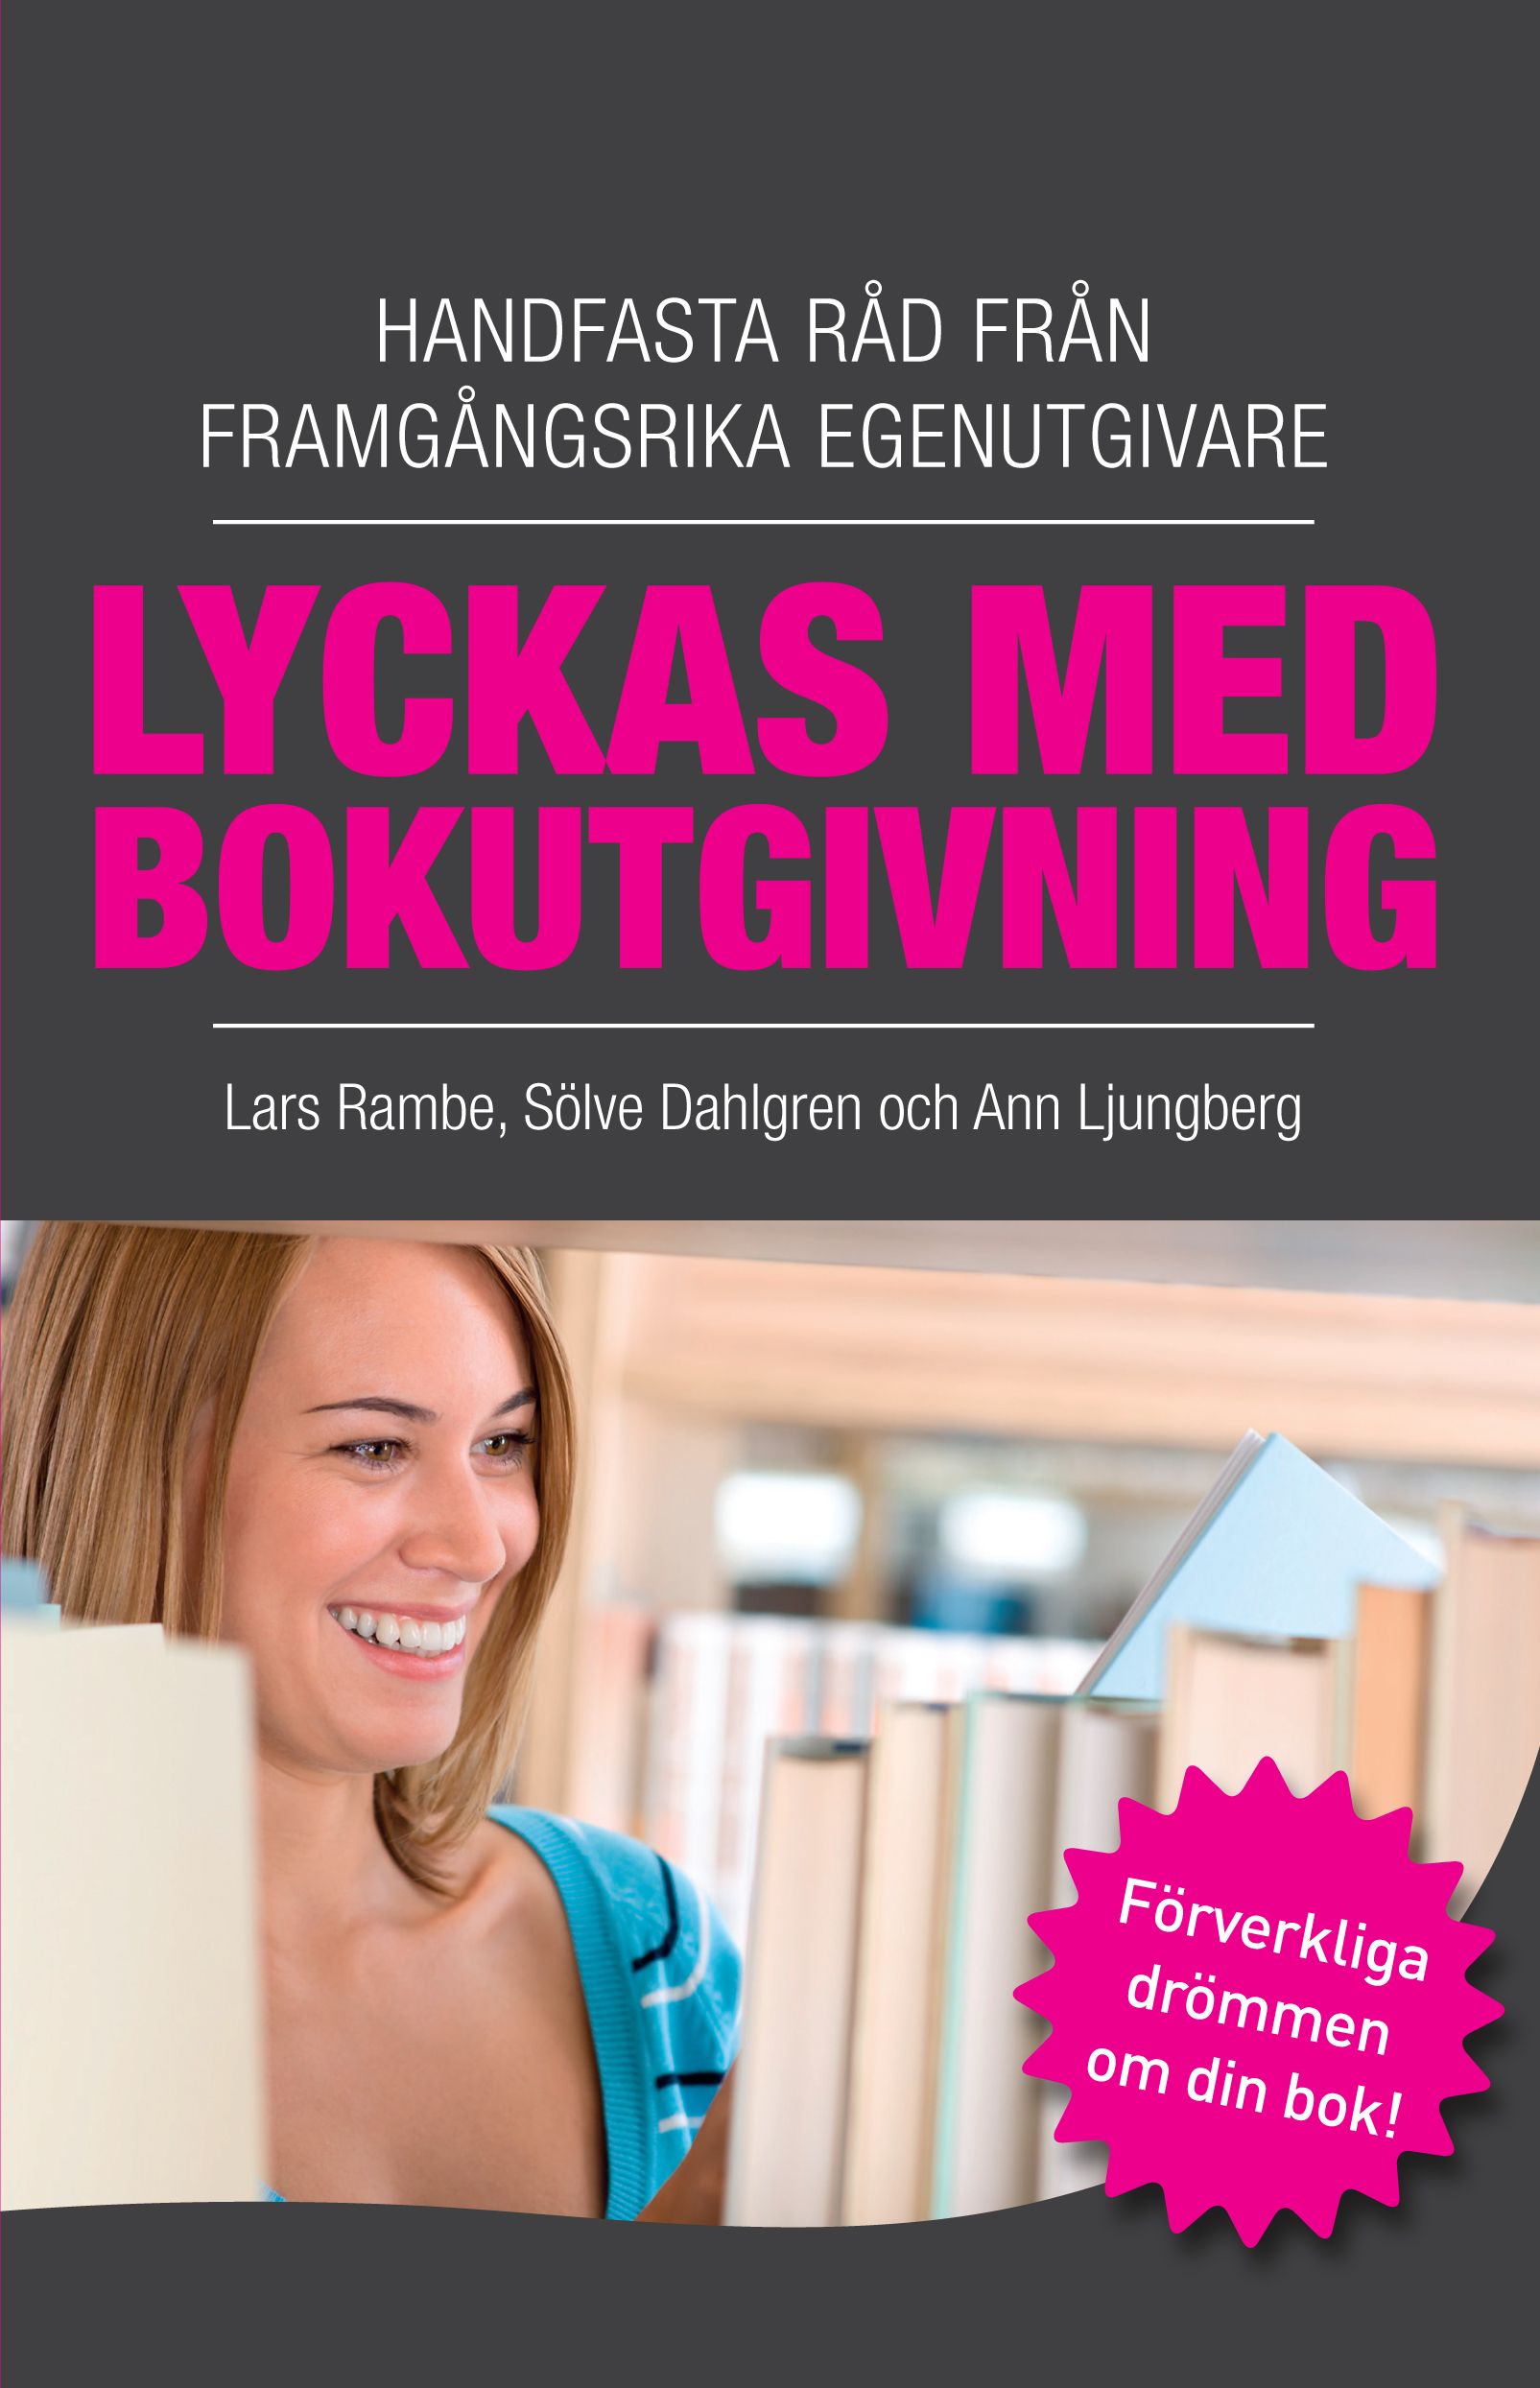 Lyckas med bokutgivning - Handfasta råd från framgångsrika egenutgivare, e-bok av Sölve Dahlgren, Ann Ljungberg, Lars Rambe